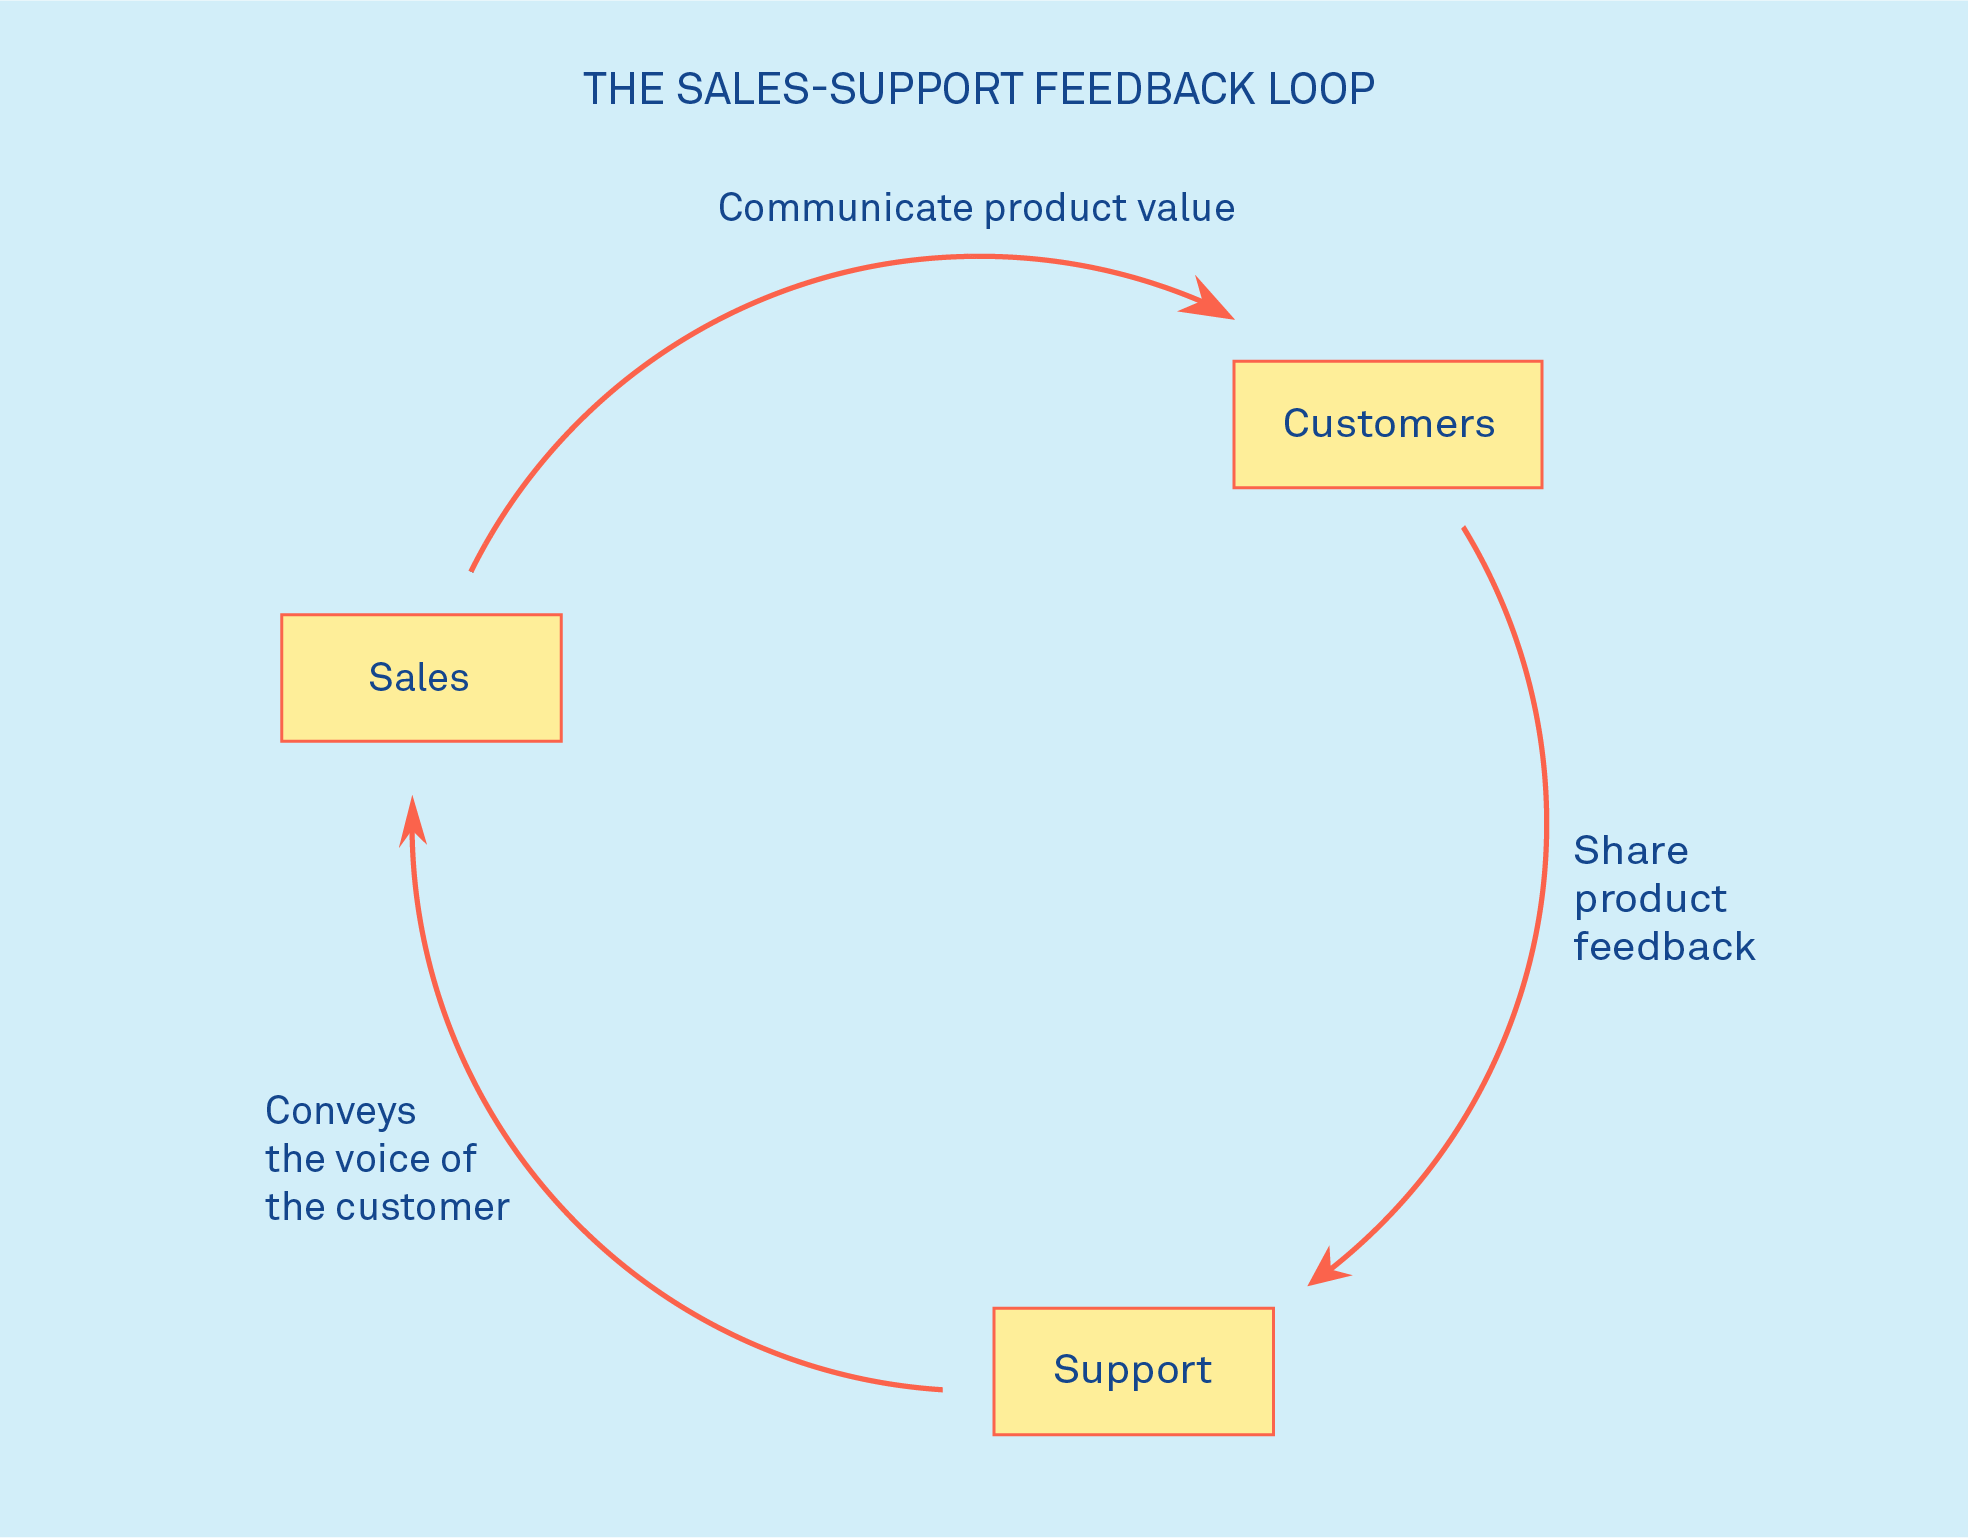 Sales-Support feedback loop